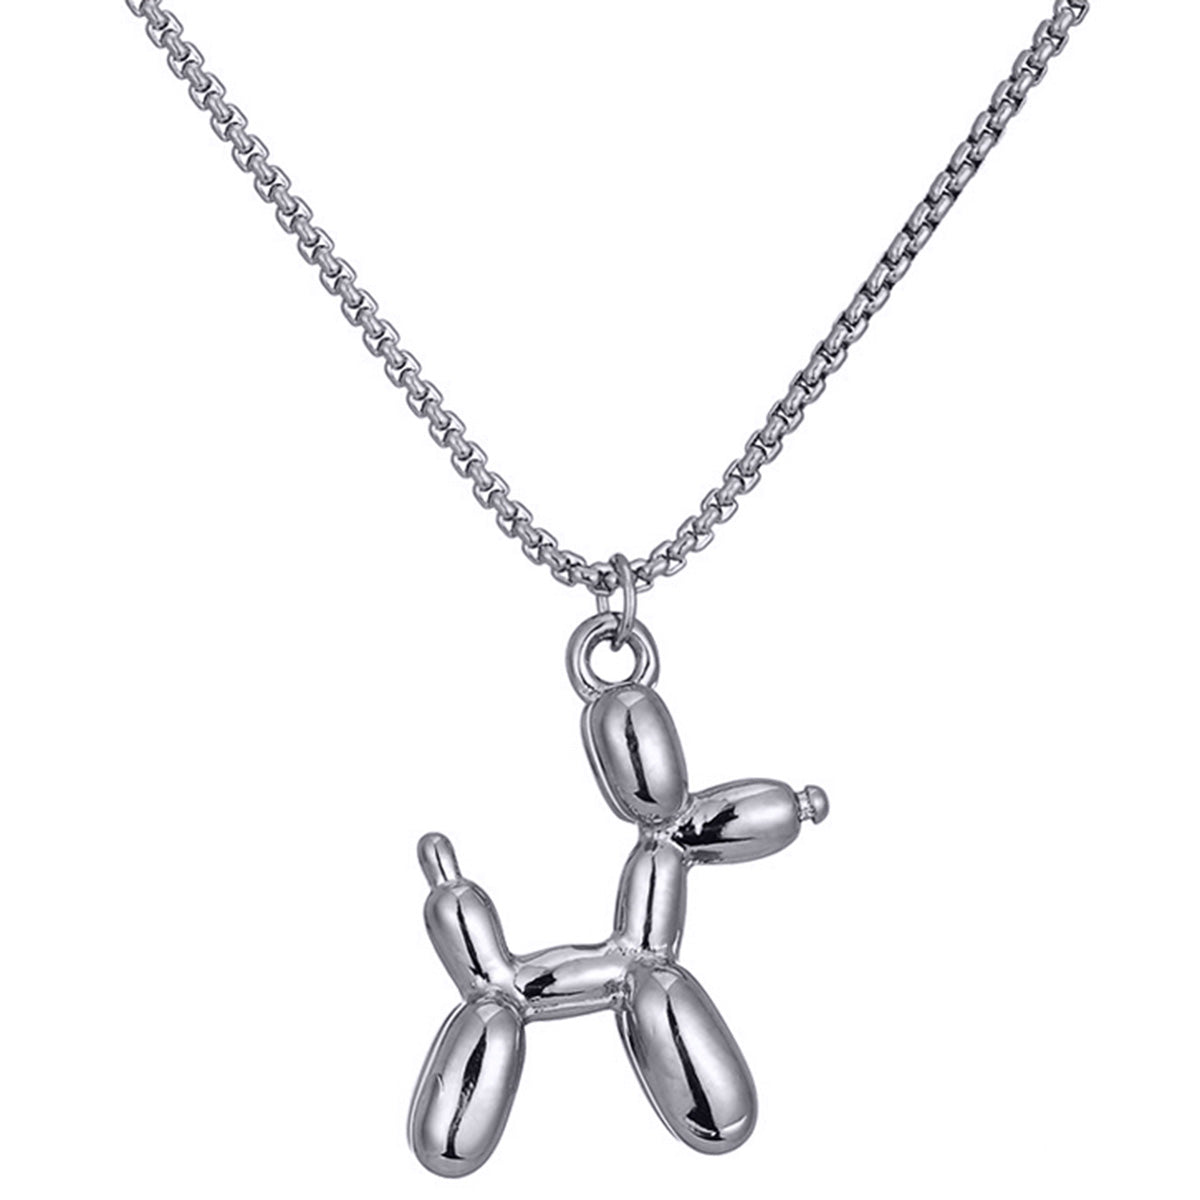 Poodle dog pendant necklace 40cm +5cm (Steel 316L)